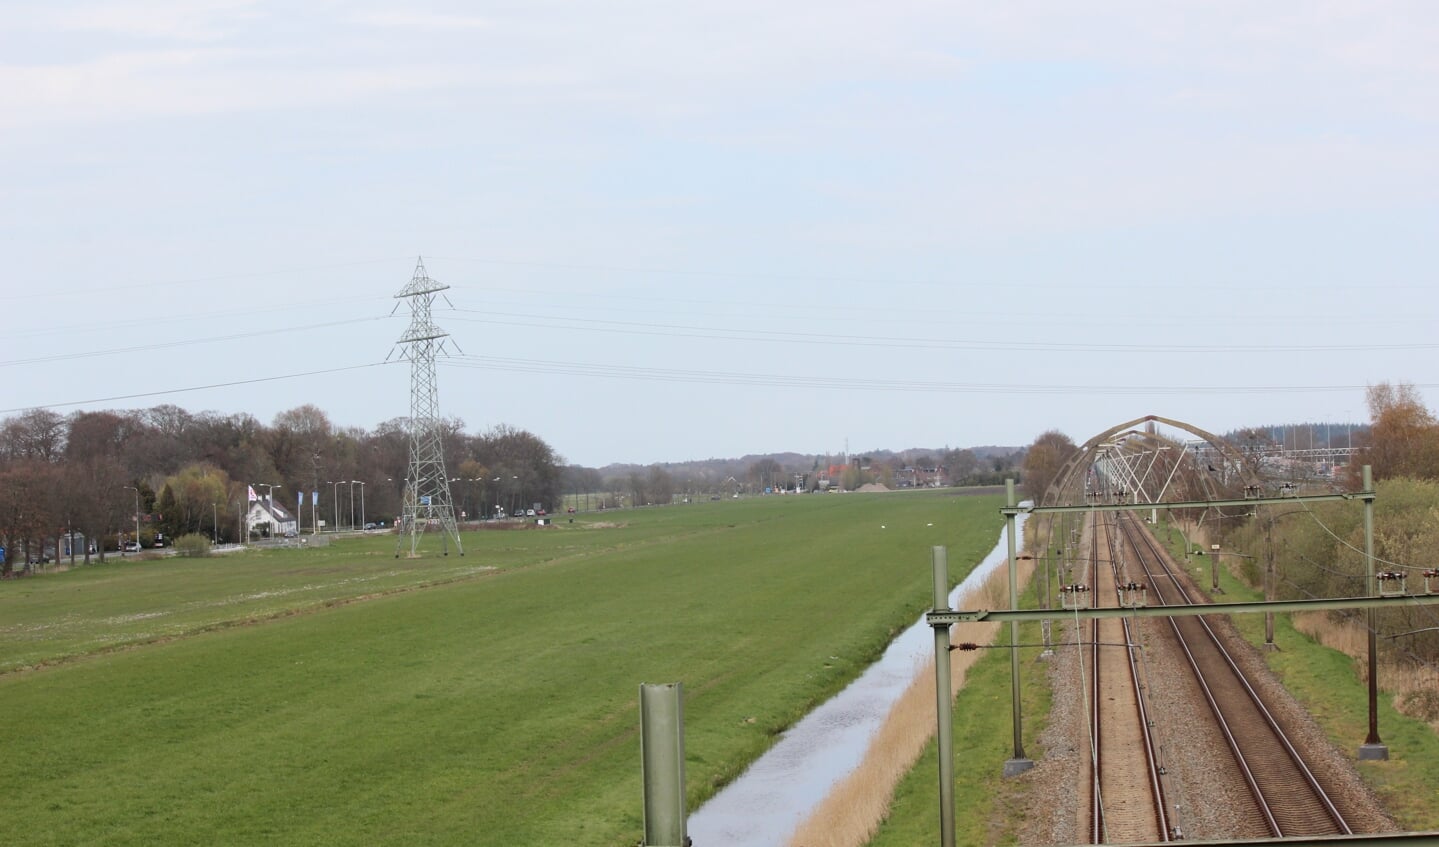 De oude monumentale spoorbogen zorgen voor commotie in combinatie met de plannen voor het zonnepark aan de Kon. Wilhelminaweg.